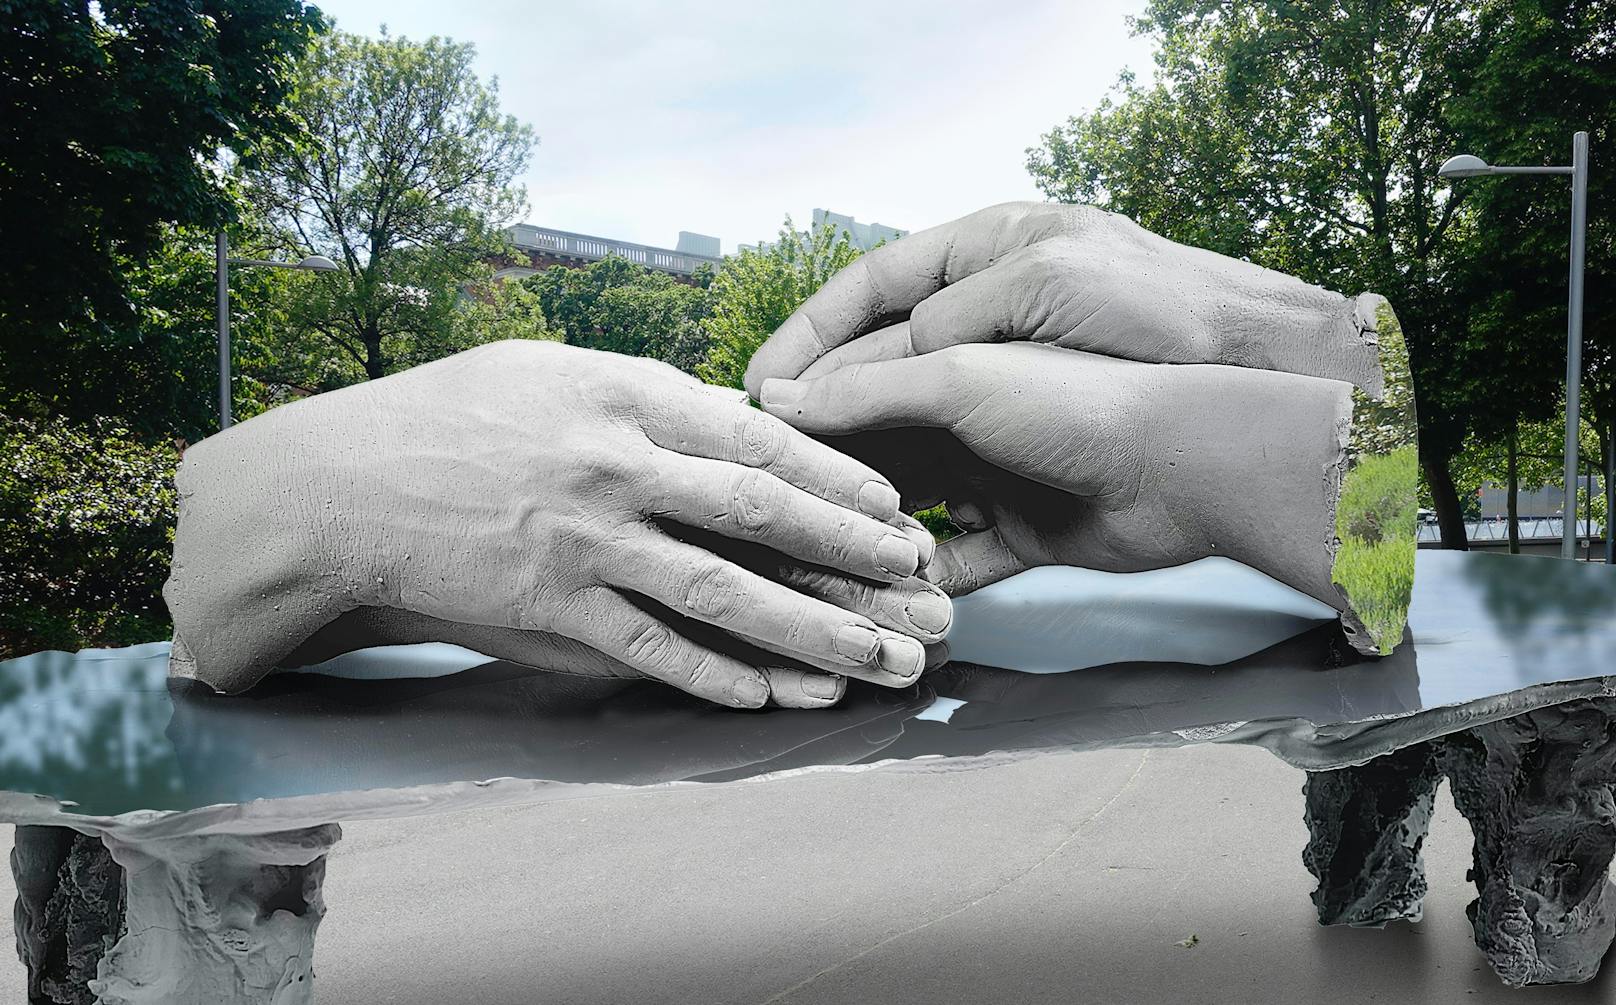 Der britische Künstler entwarf zwei Händepaare, die sich liebevoll übereinander legen. Die harten Schnittflächen an den Handgelenken symbolisieren die Verfolgung durch den Nationalsozialismus.